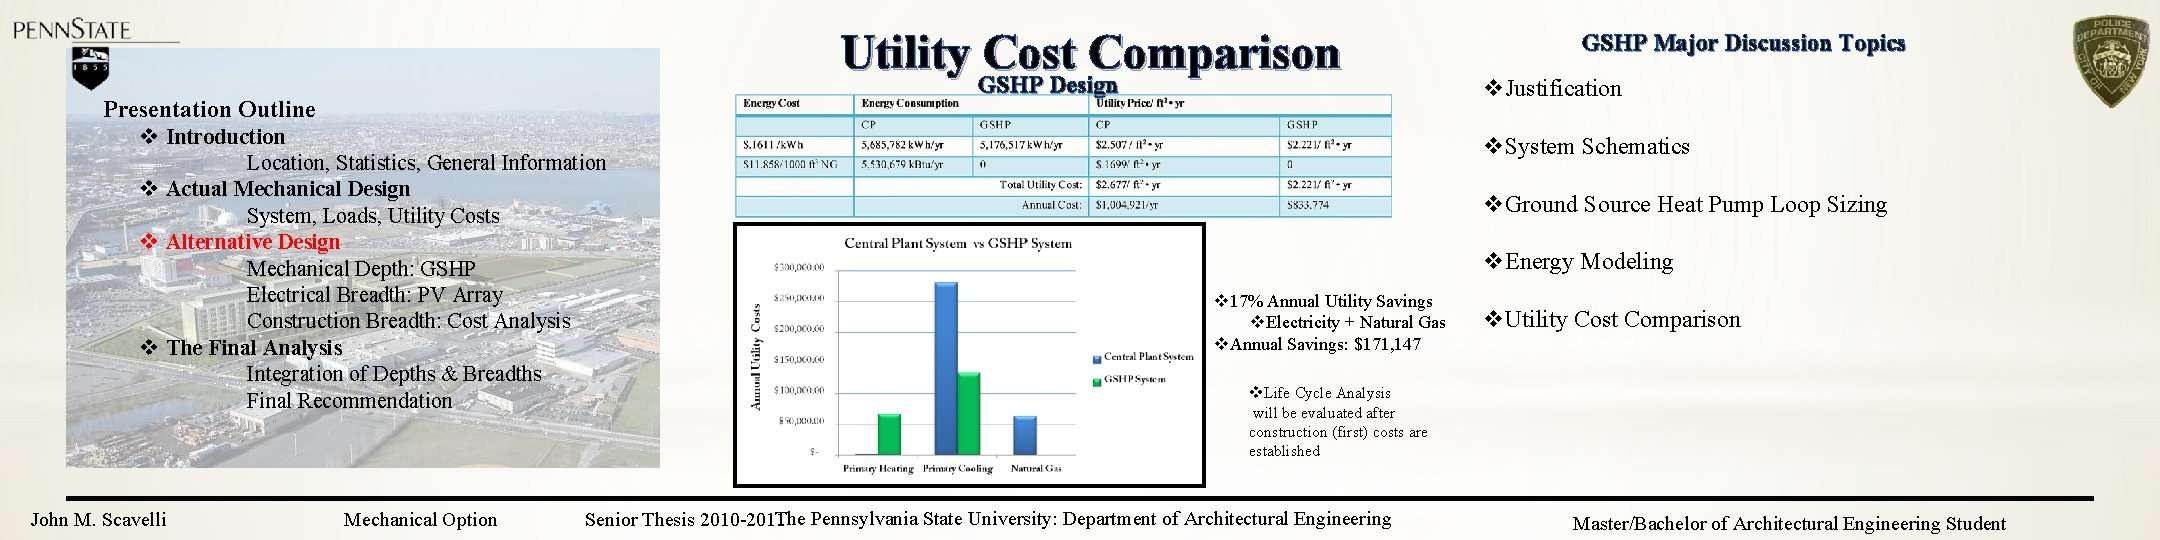 Utility Cost Comparison GSHP Design Presentation Outline v Introduction Location, Statistics, General Information v